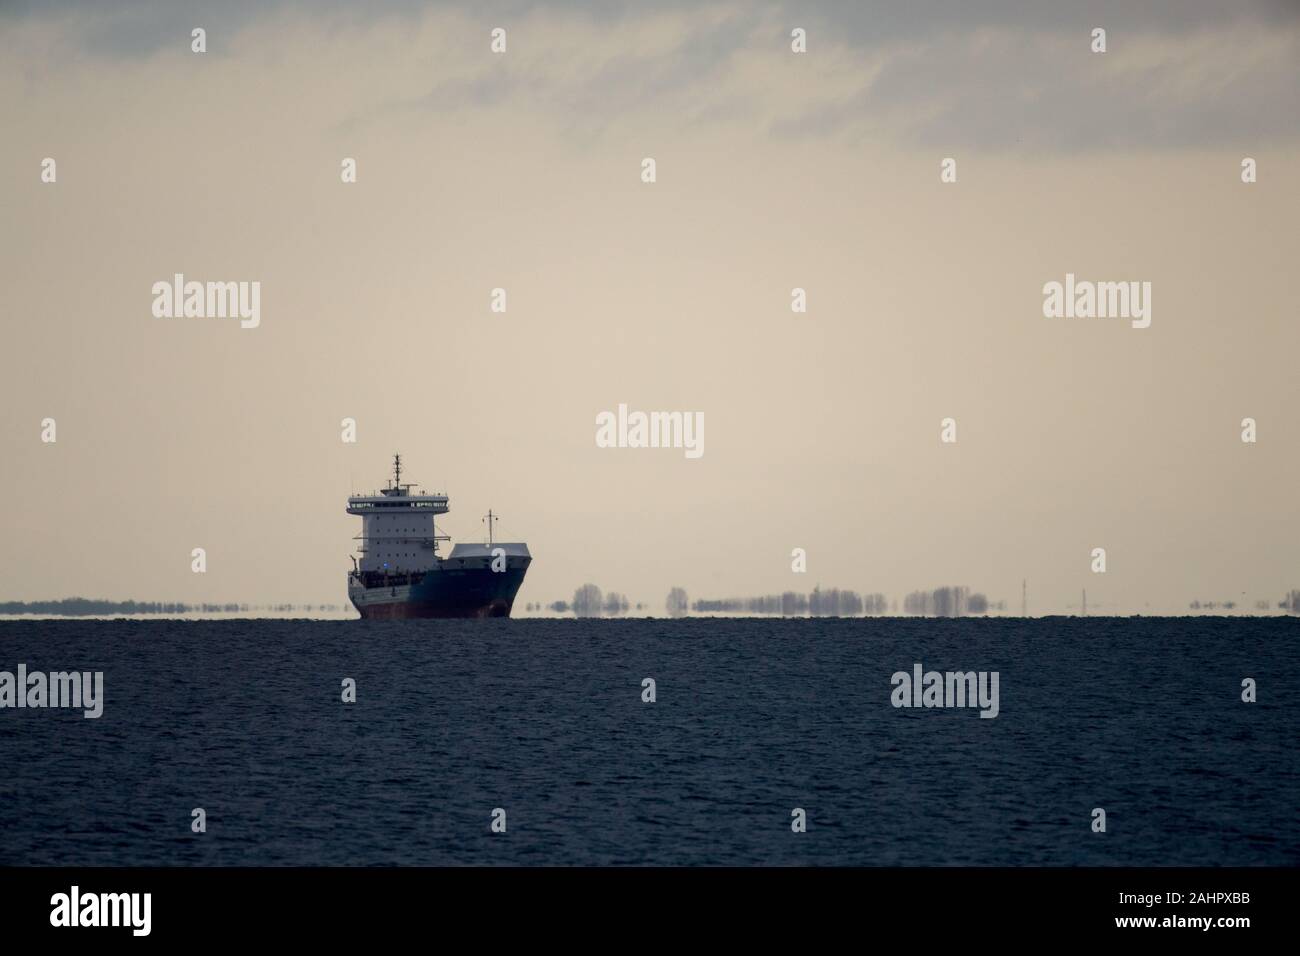 Ship in Gdynia, Poland. December 15th 2019 © Wojciech Strozyk / Alamy Stock Photo Stock Photo